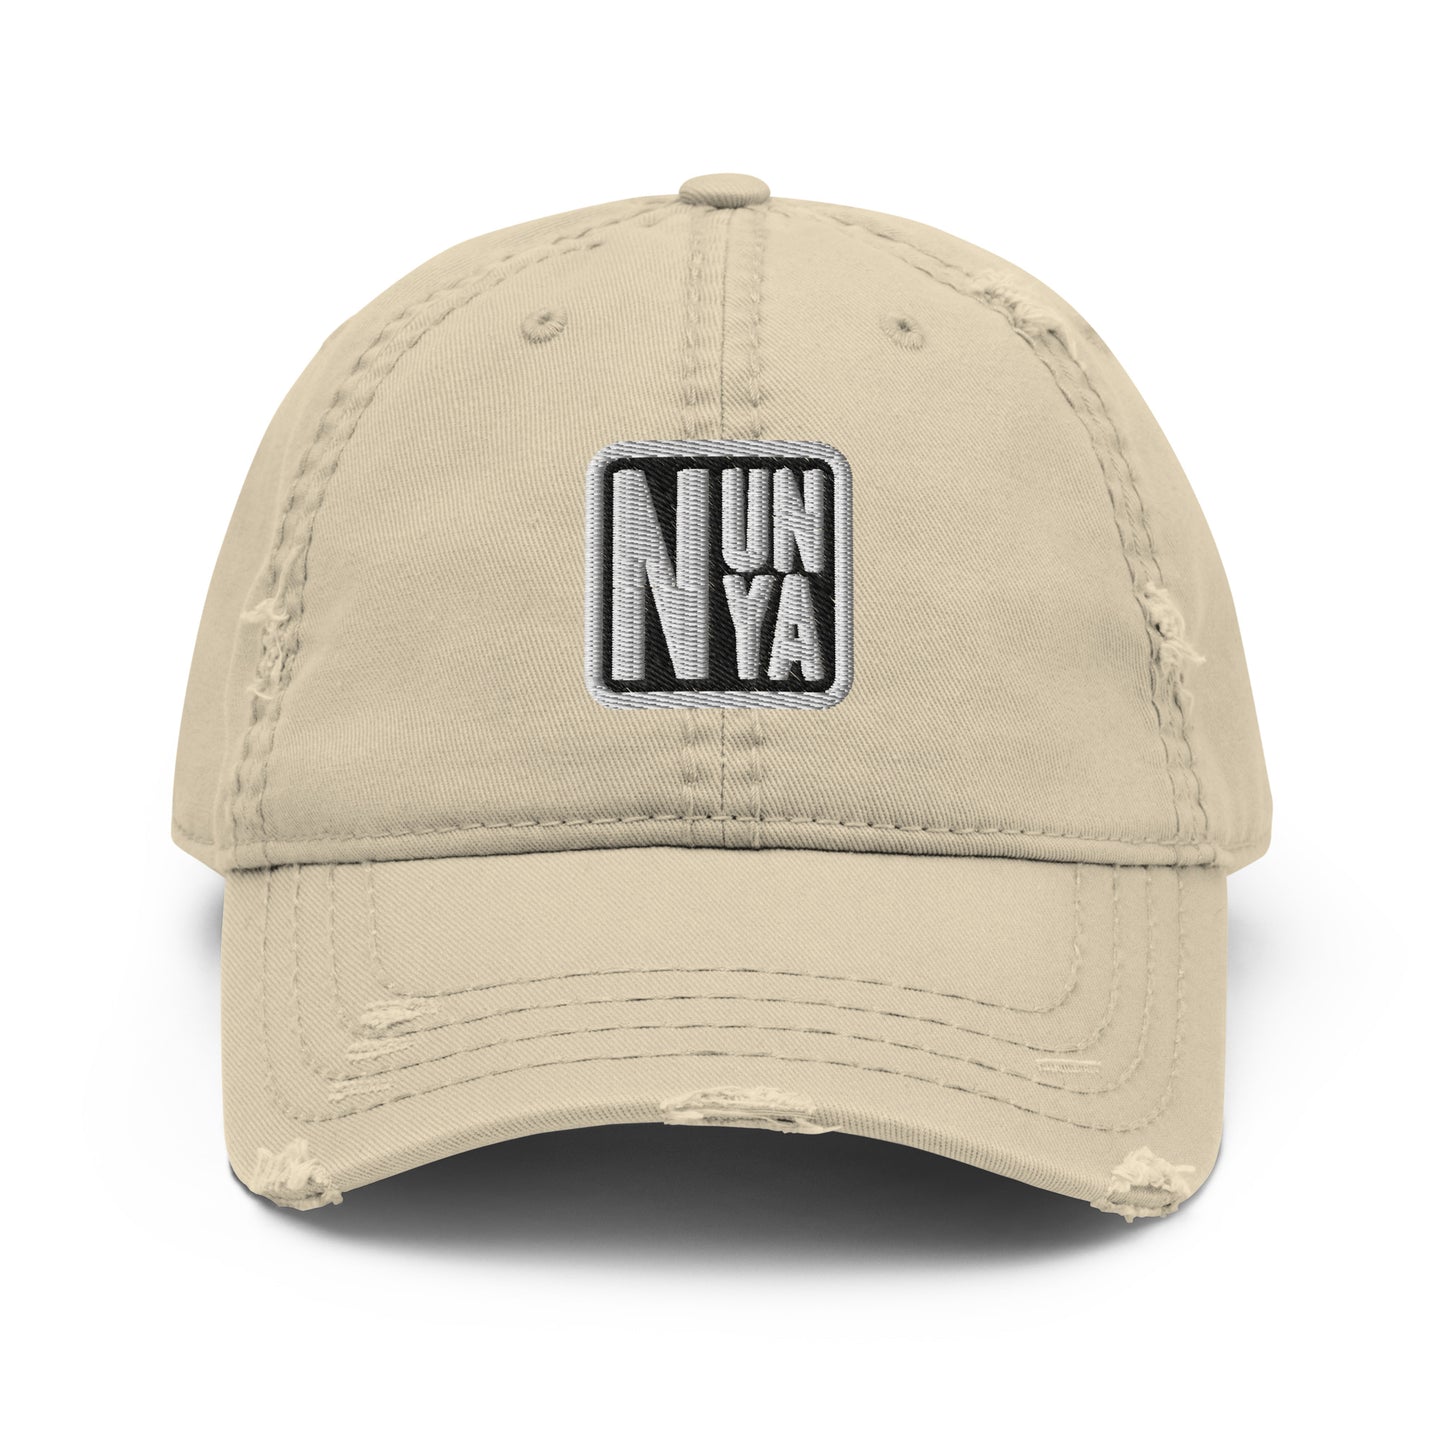 Nunya (W) Distressed Dad Hat